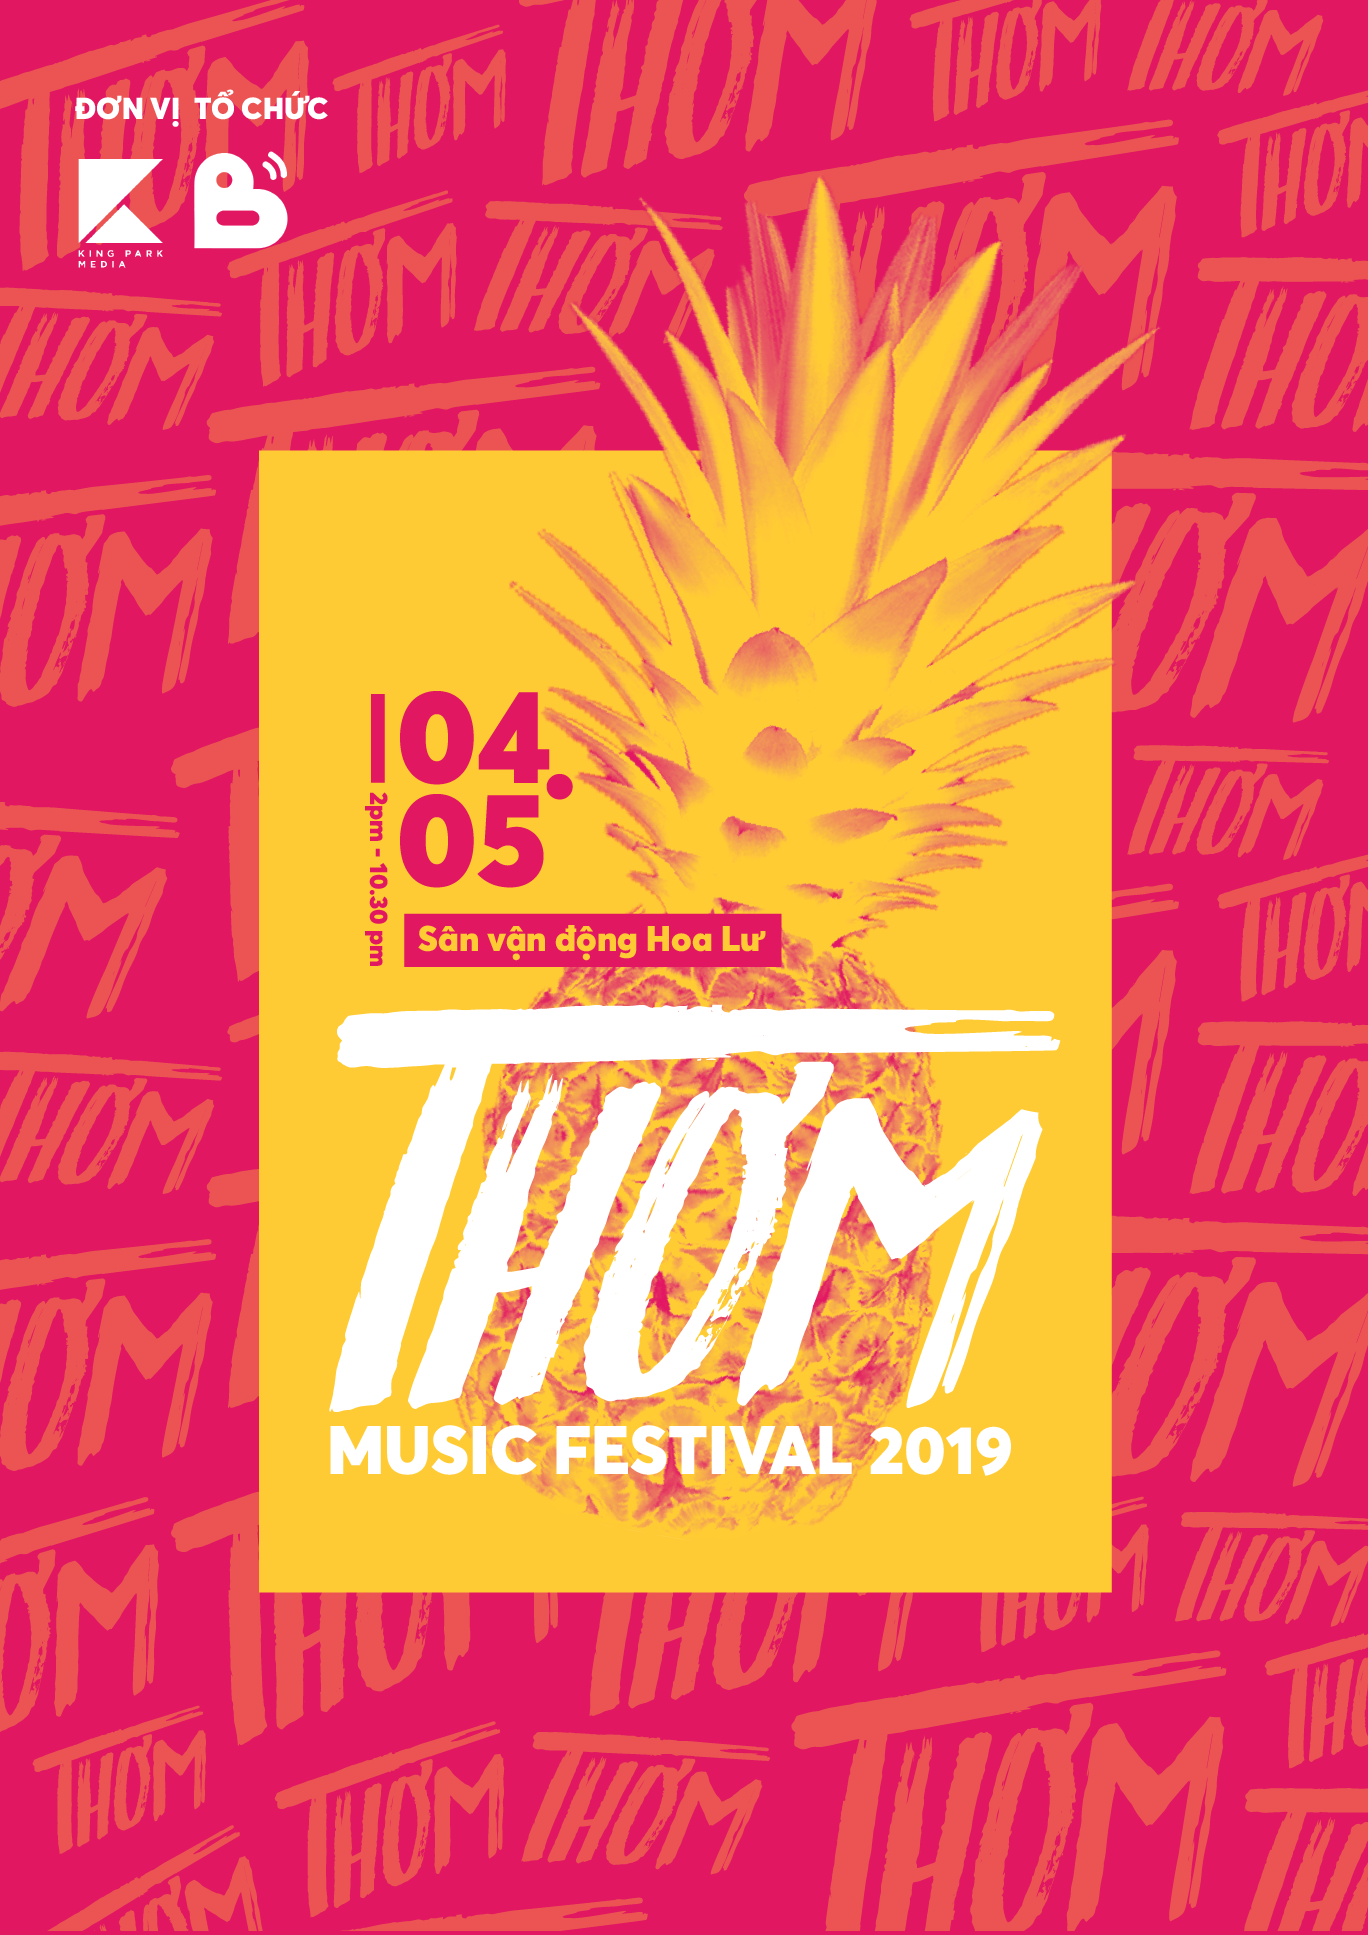 Thơm Music Festival - Sân Khấu Ước Mơ Cho Các Nghệ Sĩ Underground Và Indie